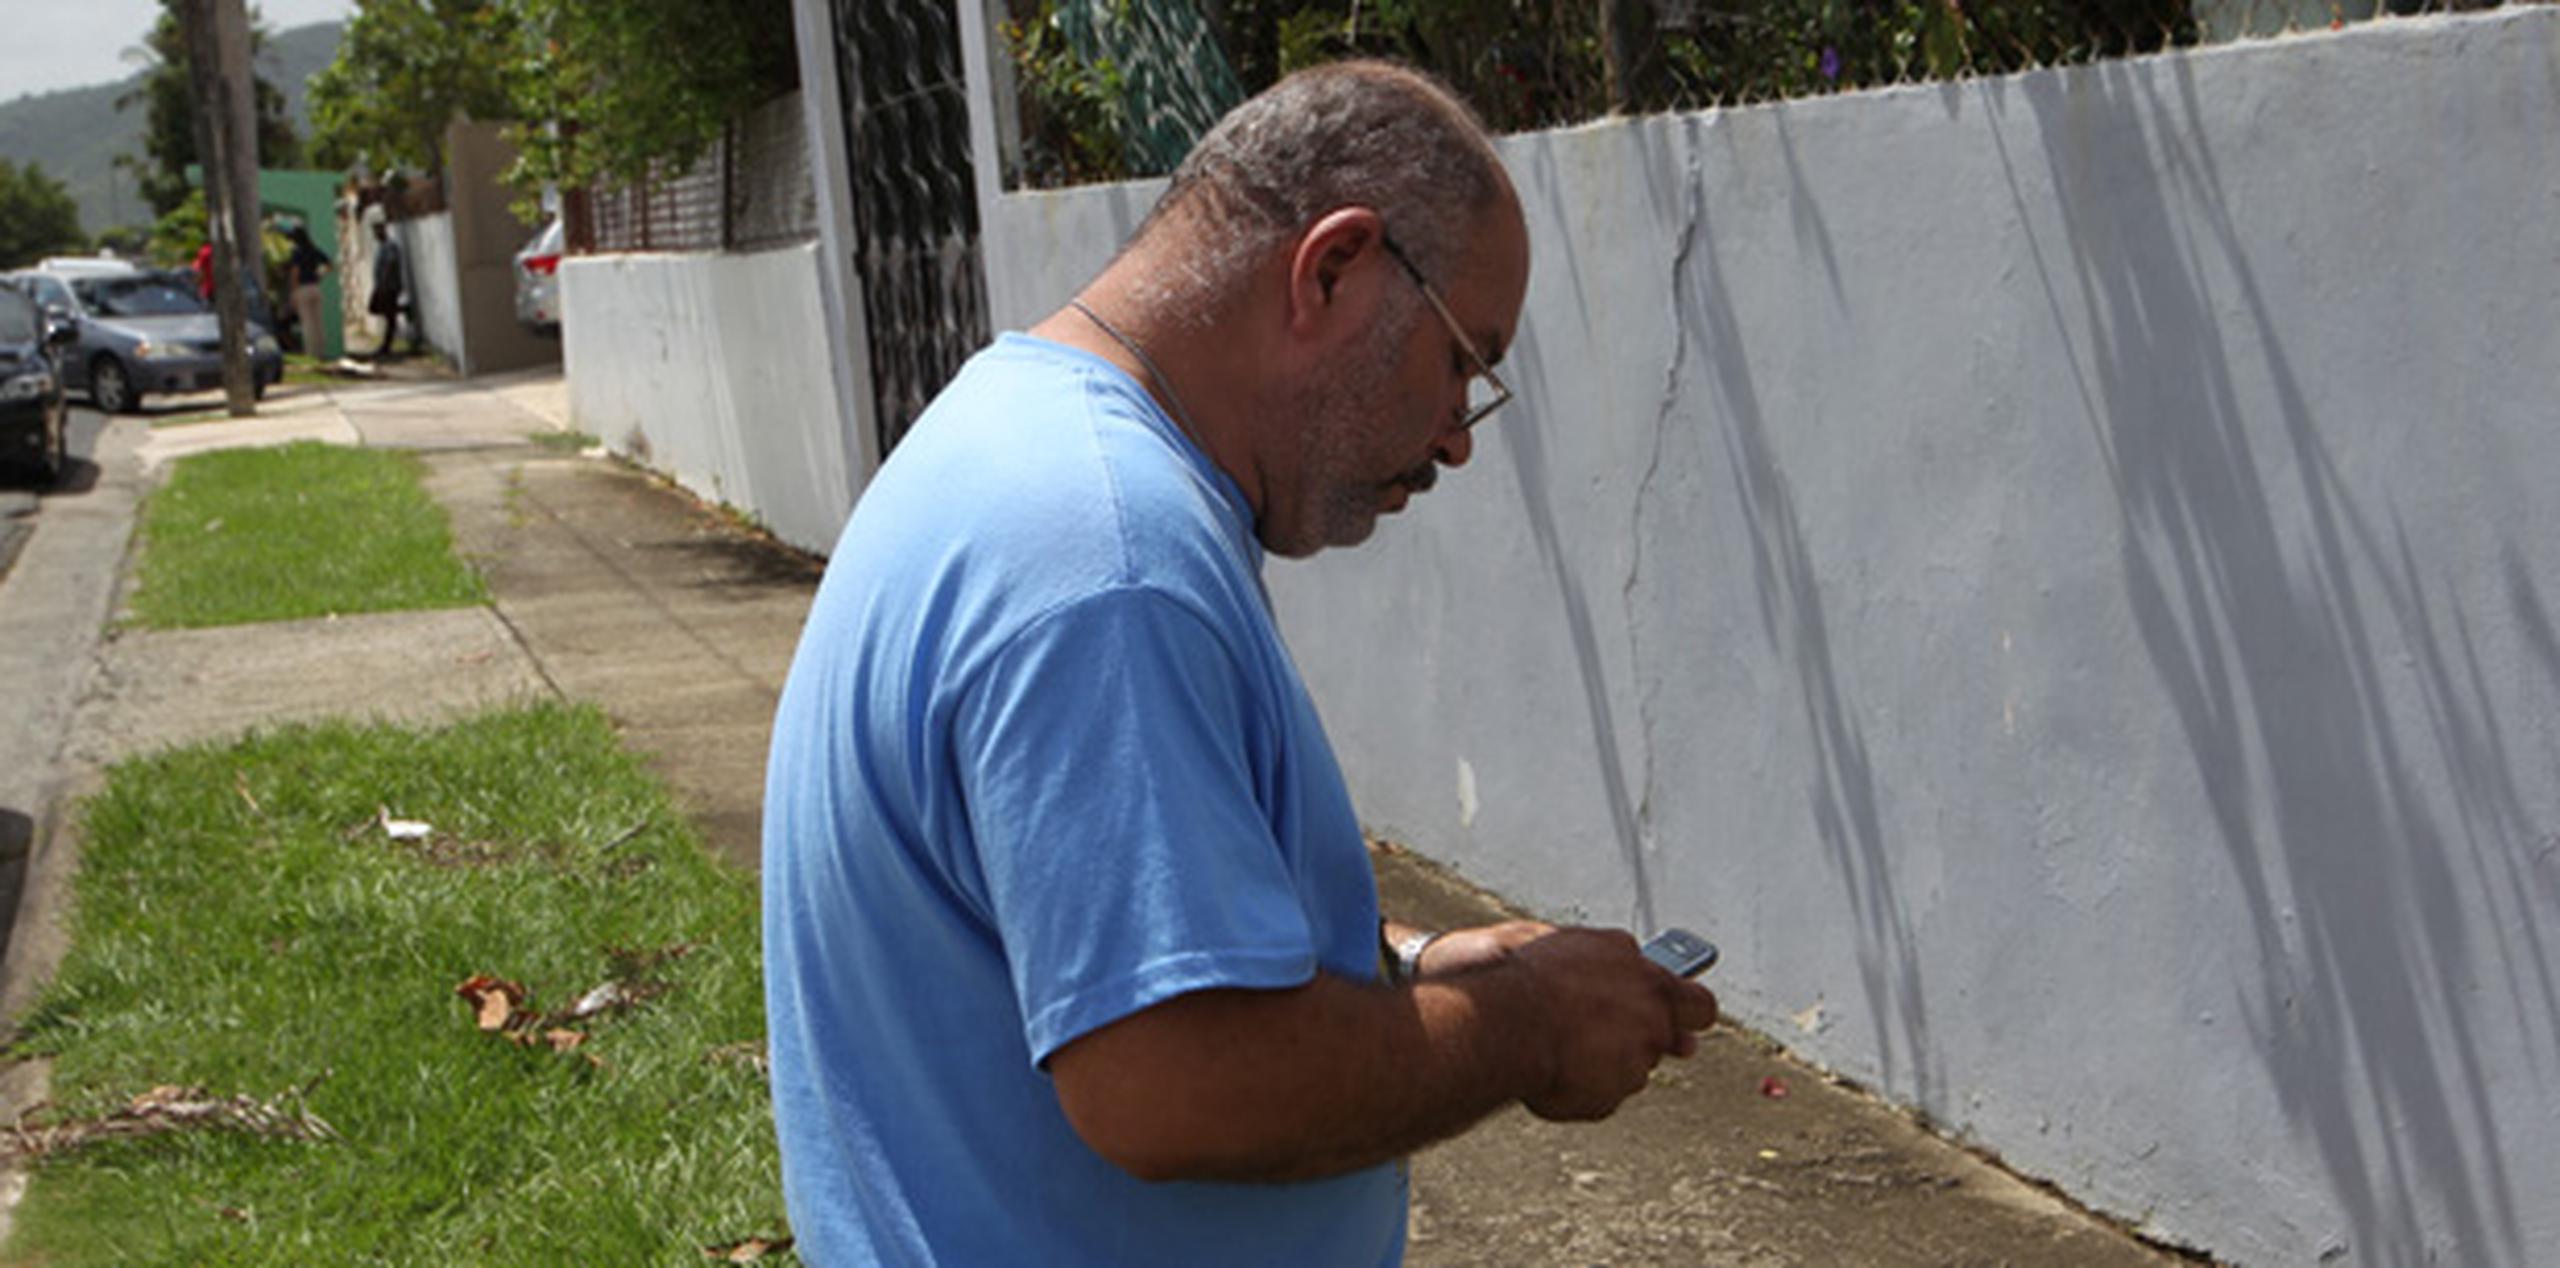 Gerardo Cotto aún no ha podido confirmar si era cierto que su hijo había muerto en la balacera que se reportó este viernes en la mañana en Caguas. (alex.figueroa@gfrmedia.com)